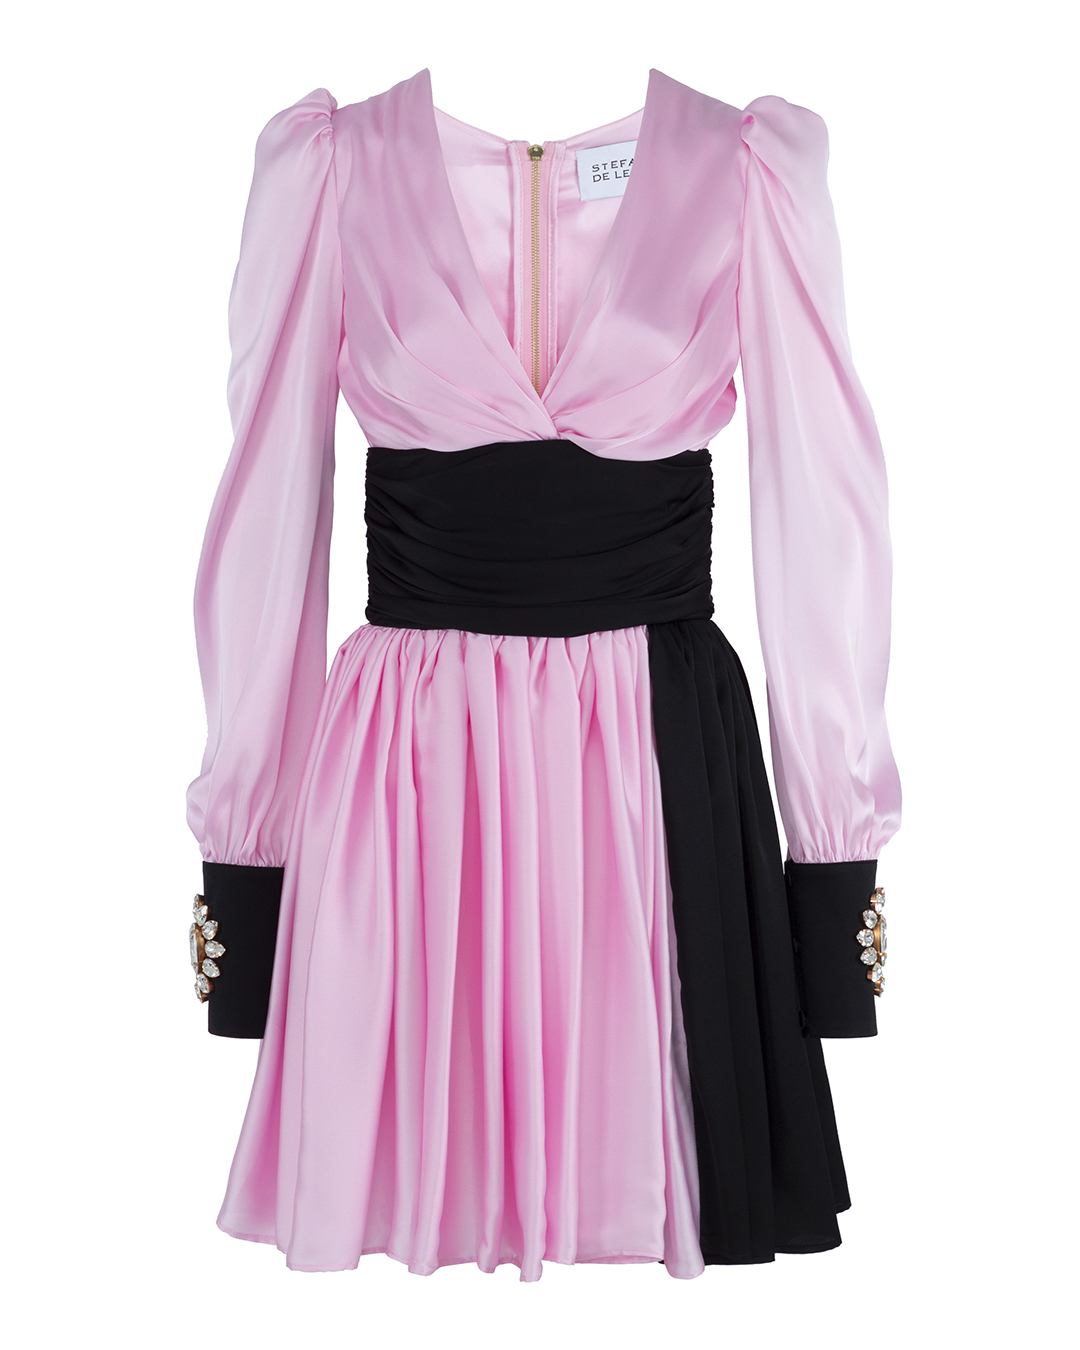 платье Stefano De Lellis OLIVIA.LELLIS черный+розовый 42, размер 42, цвет черный+розовый OLIVIA.LELLIS черный+розовый 42 - фото 1